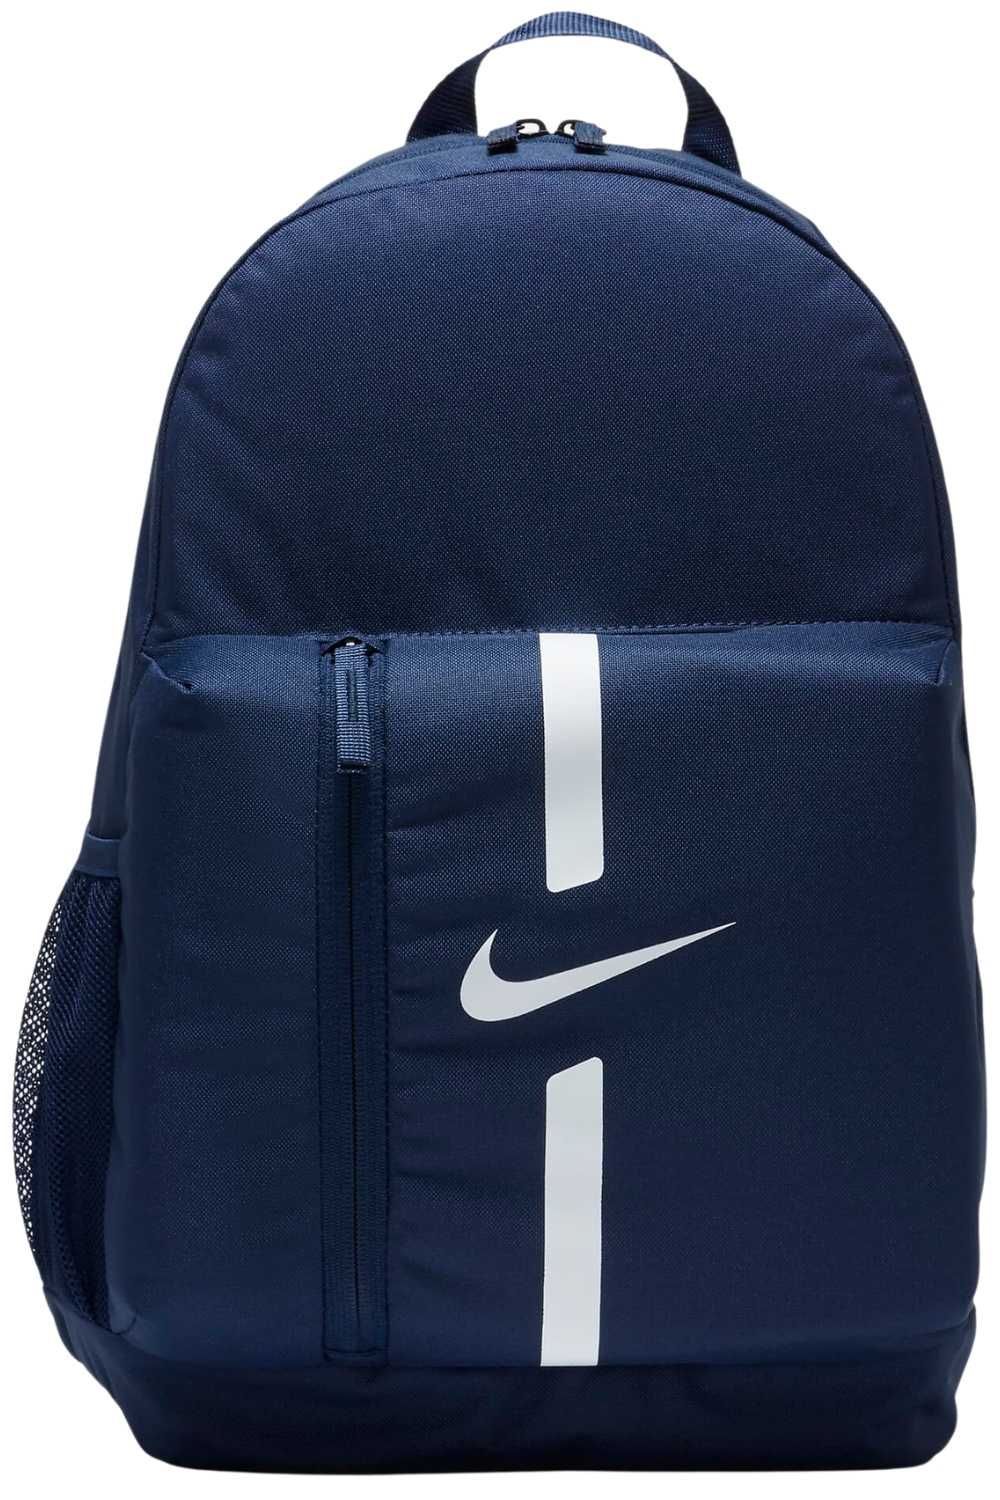 Szkolny plecak Nike sportowy turystyczny granatowy